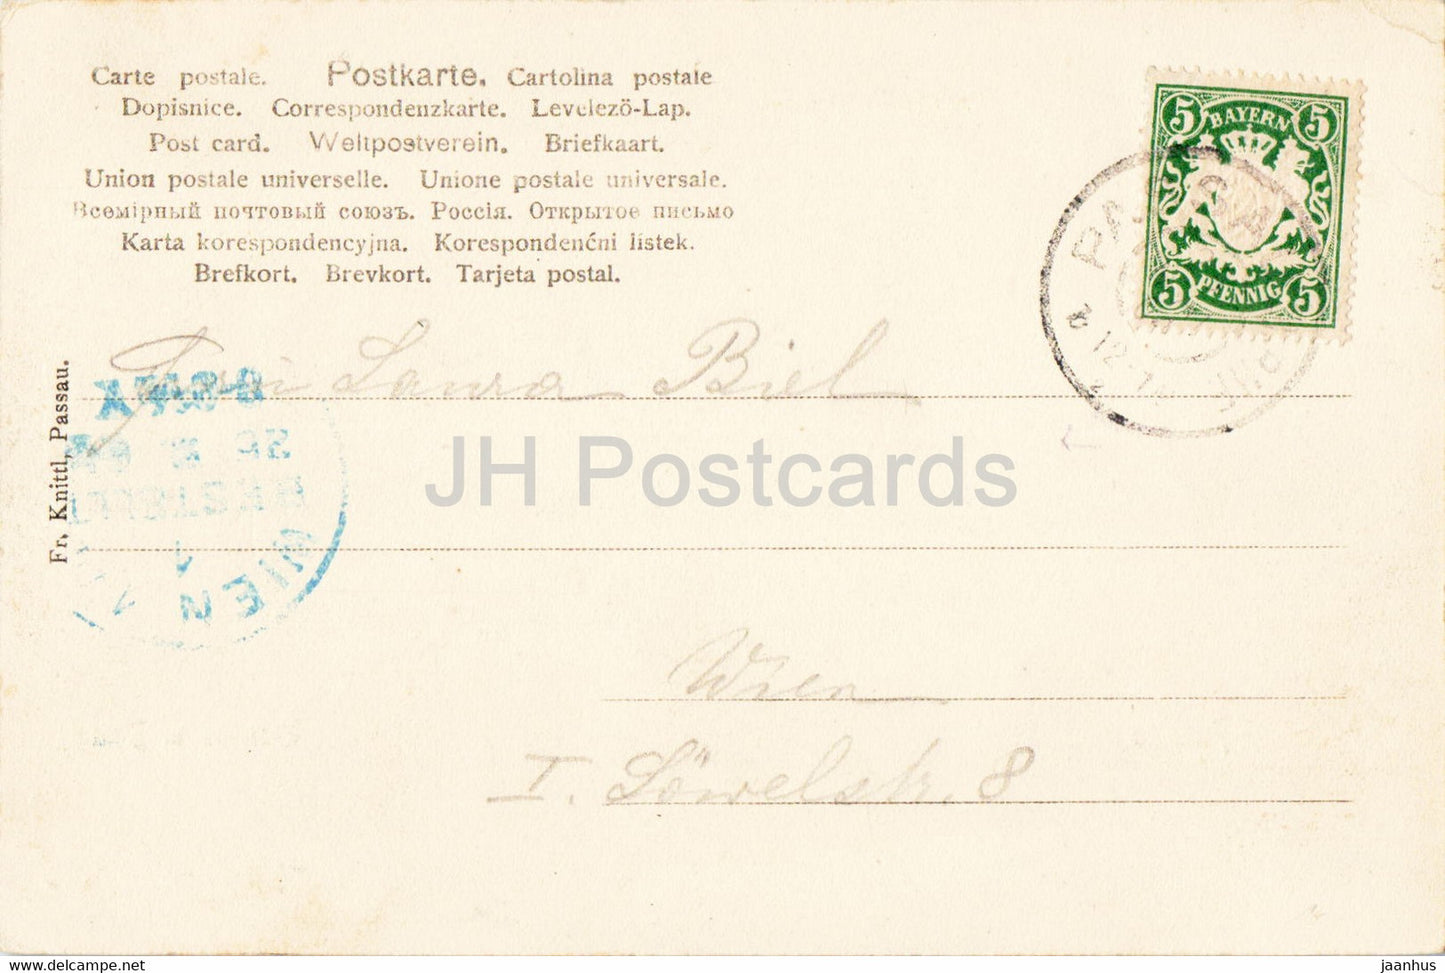 Passau - Rathaus u Dom - Rathaus - Dom - 7386 - alte Postkarte - 1904 - Deutschland - gebraucht